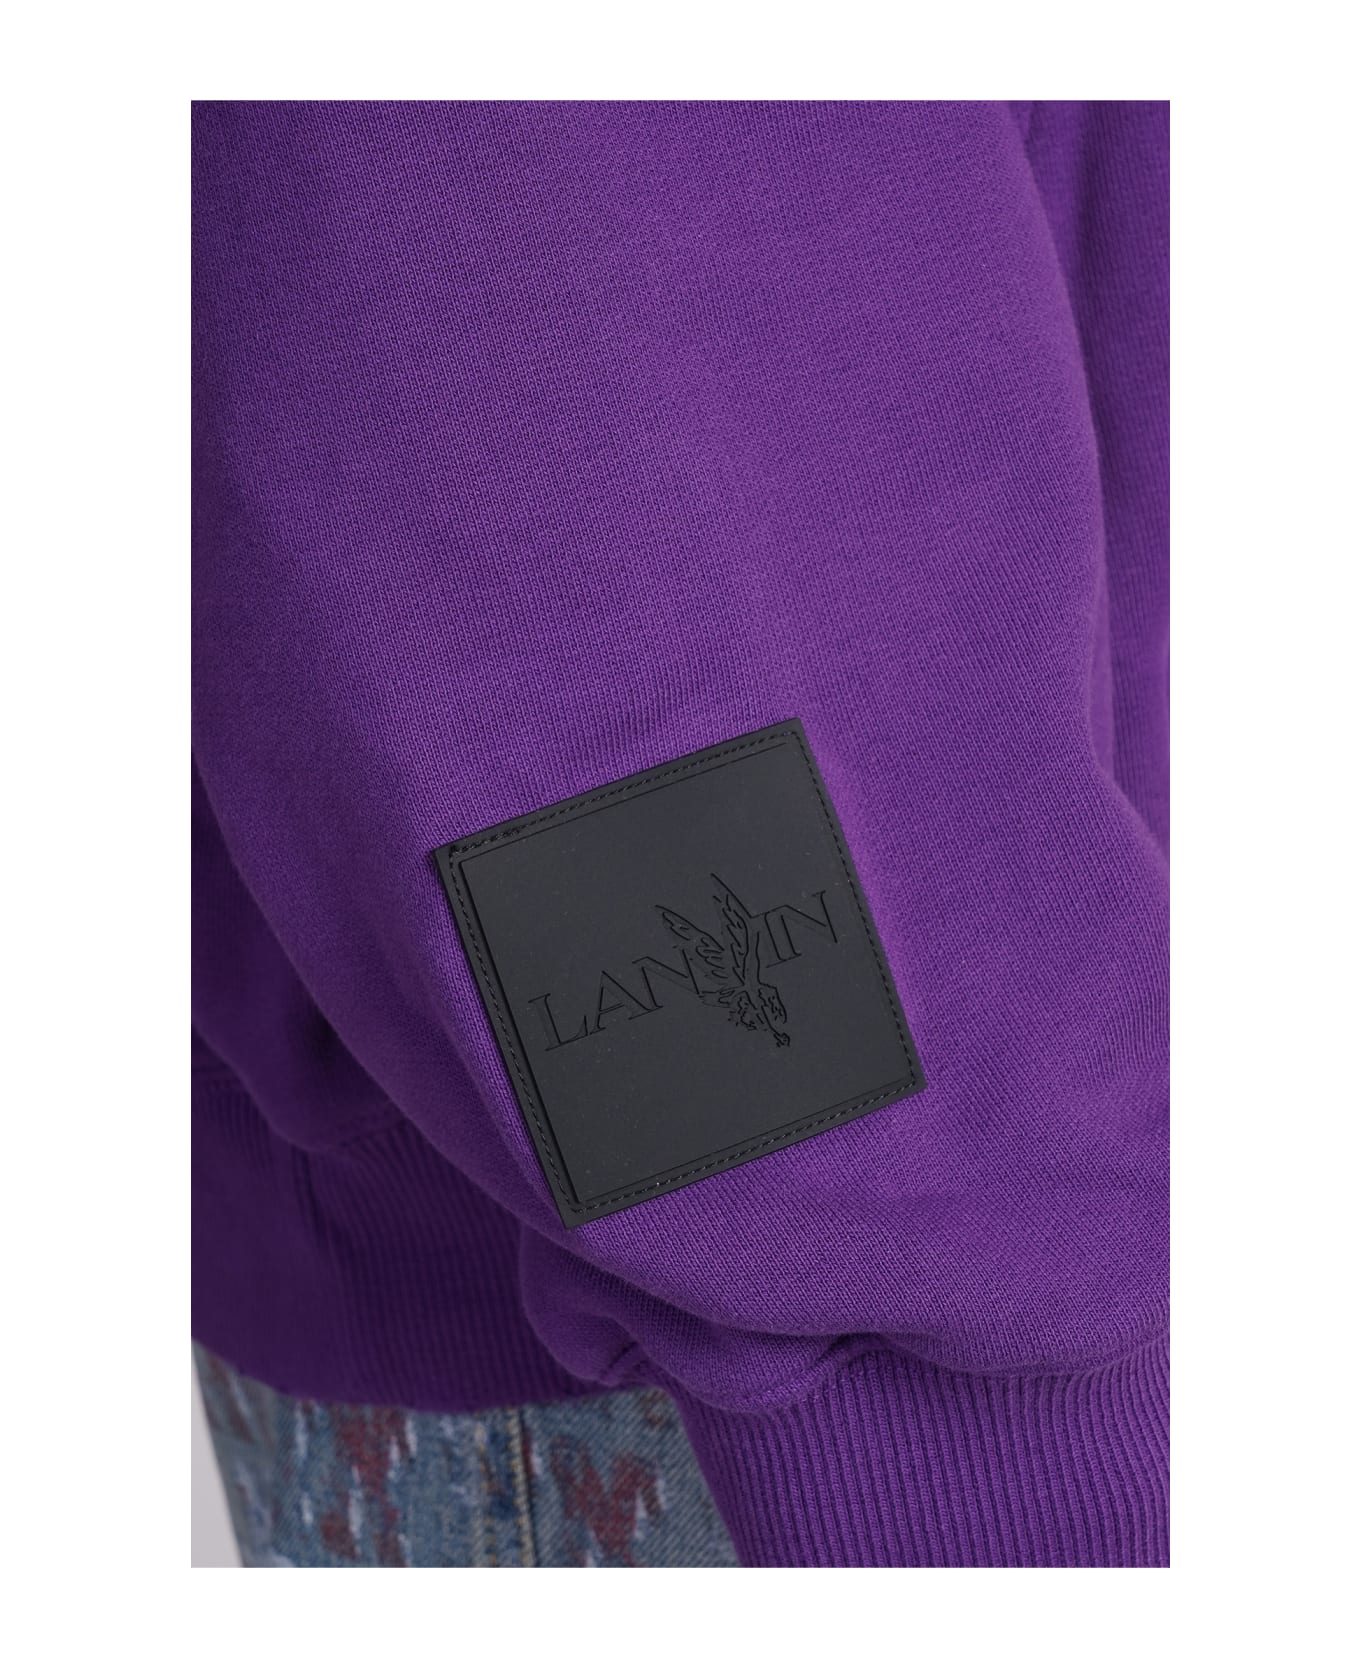 Lanvin Sweatshirt In Viola Cotton - Viola